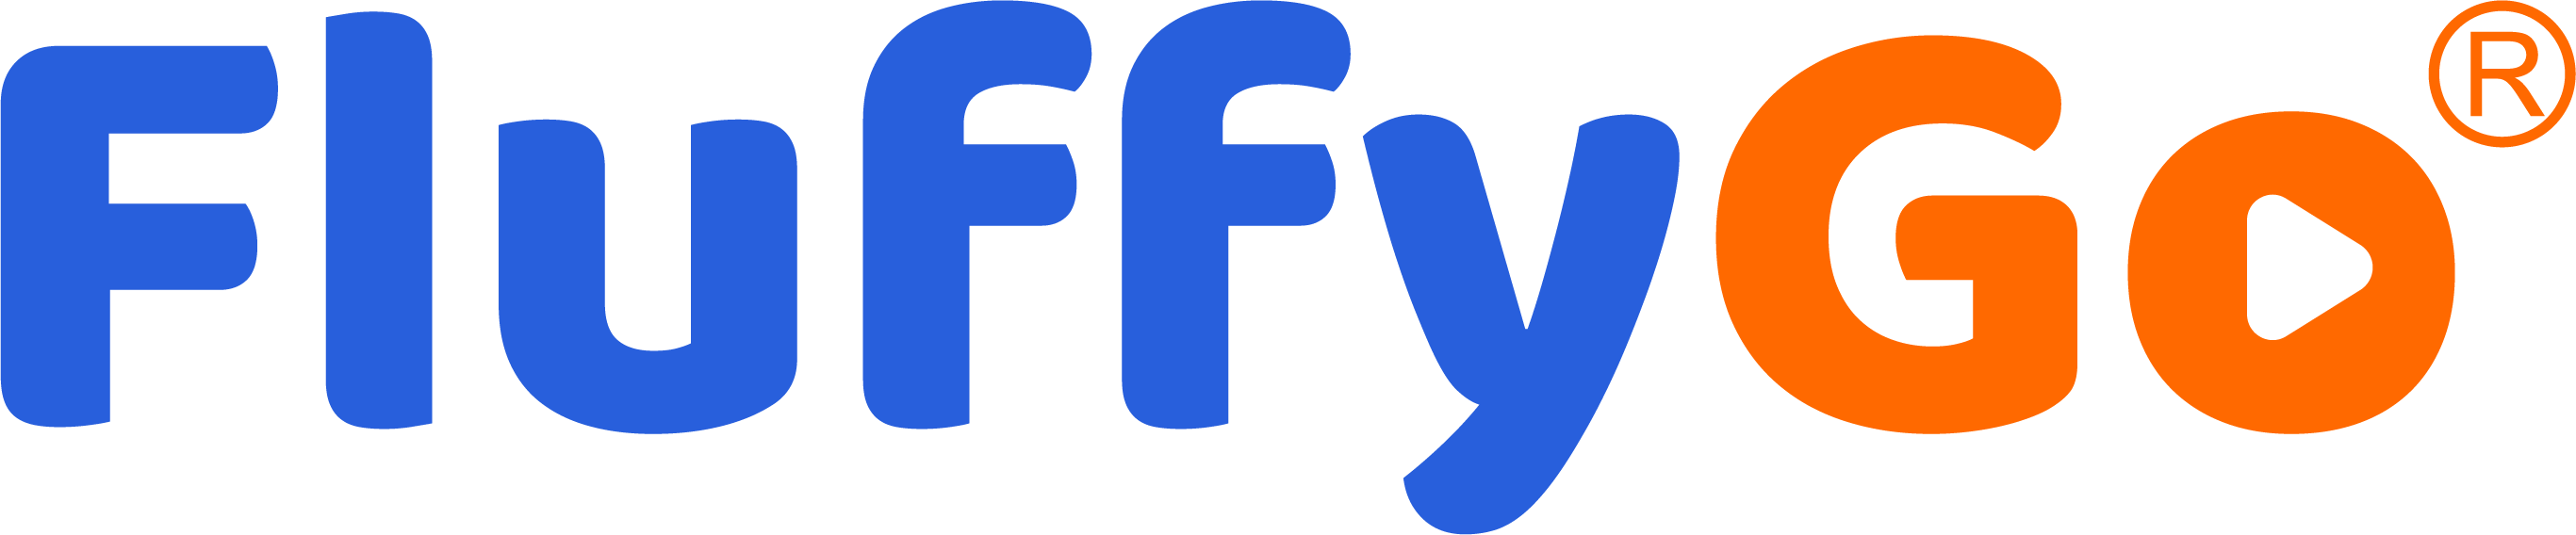 FluffyGo-logo-r